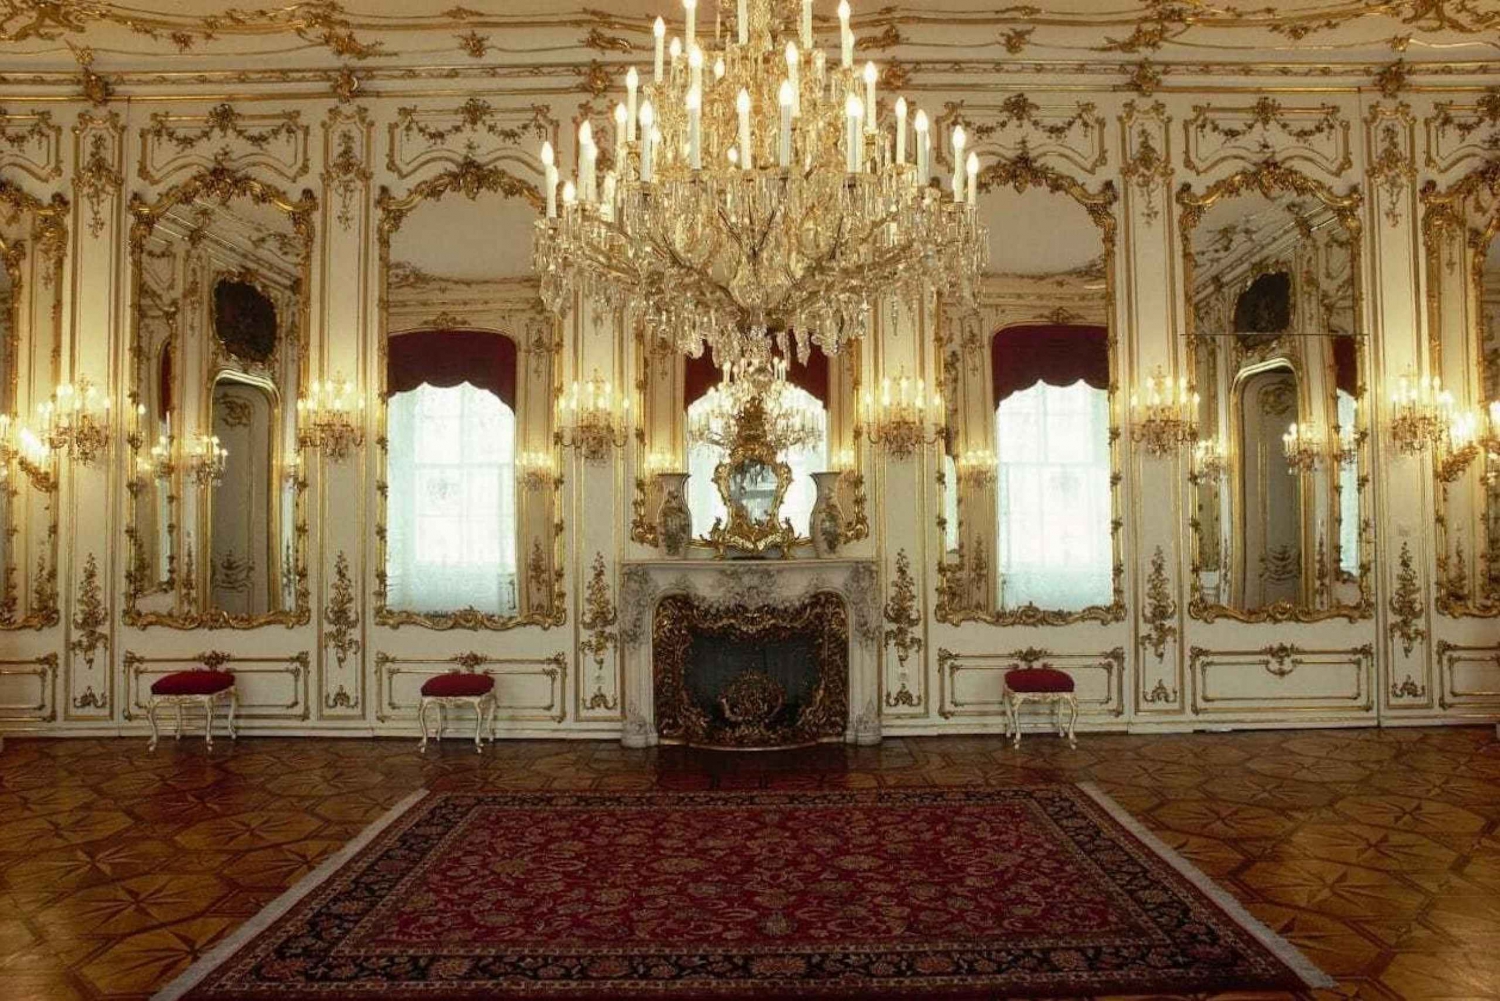 Wenen: Hofburg en keizerin Sisi museum rondleiding